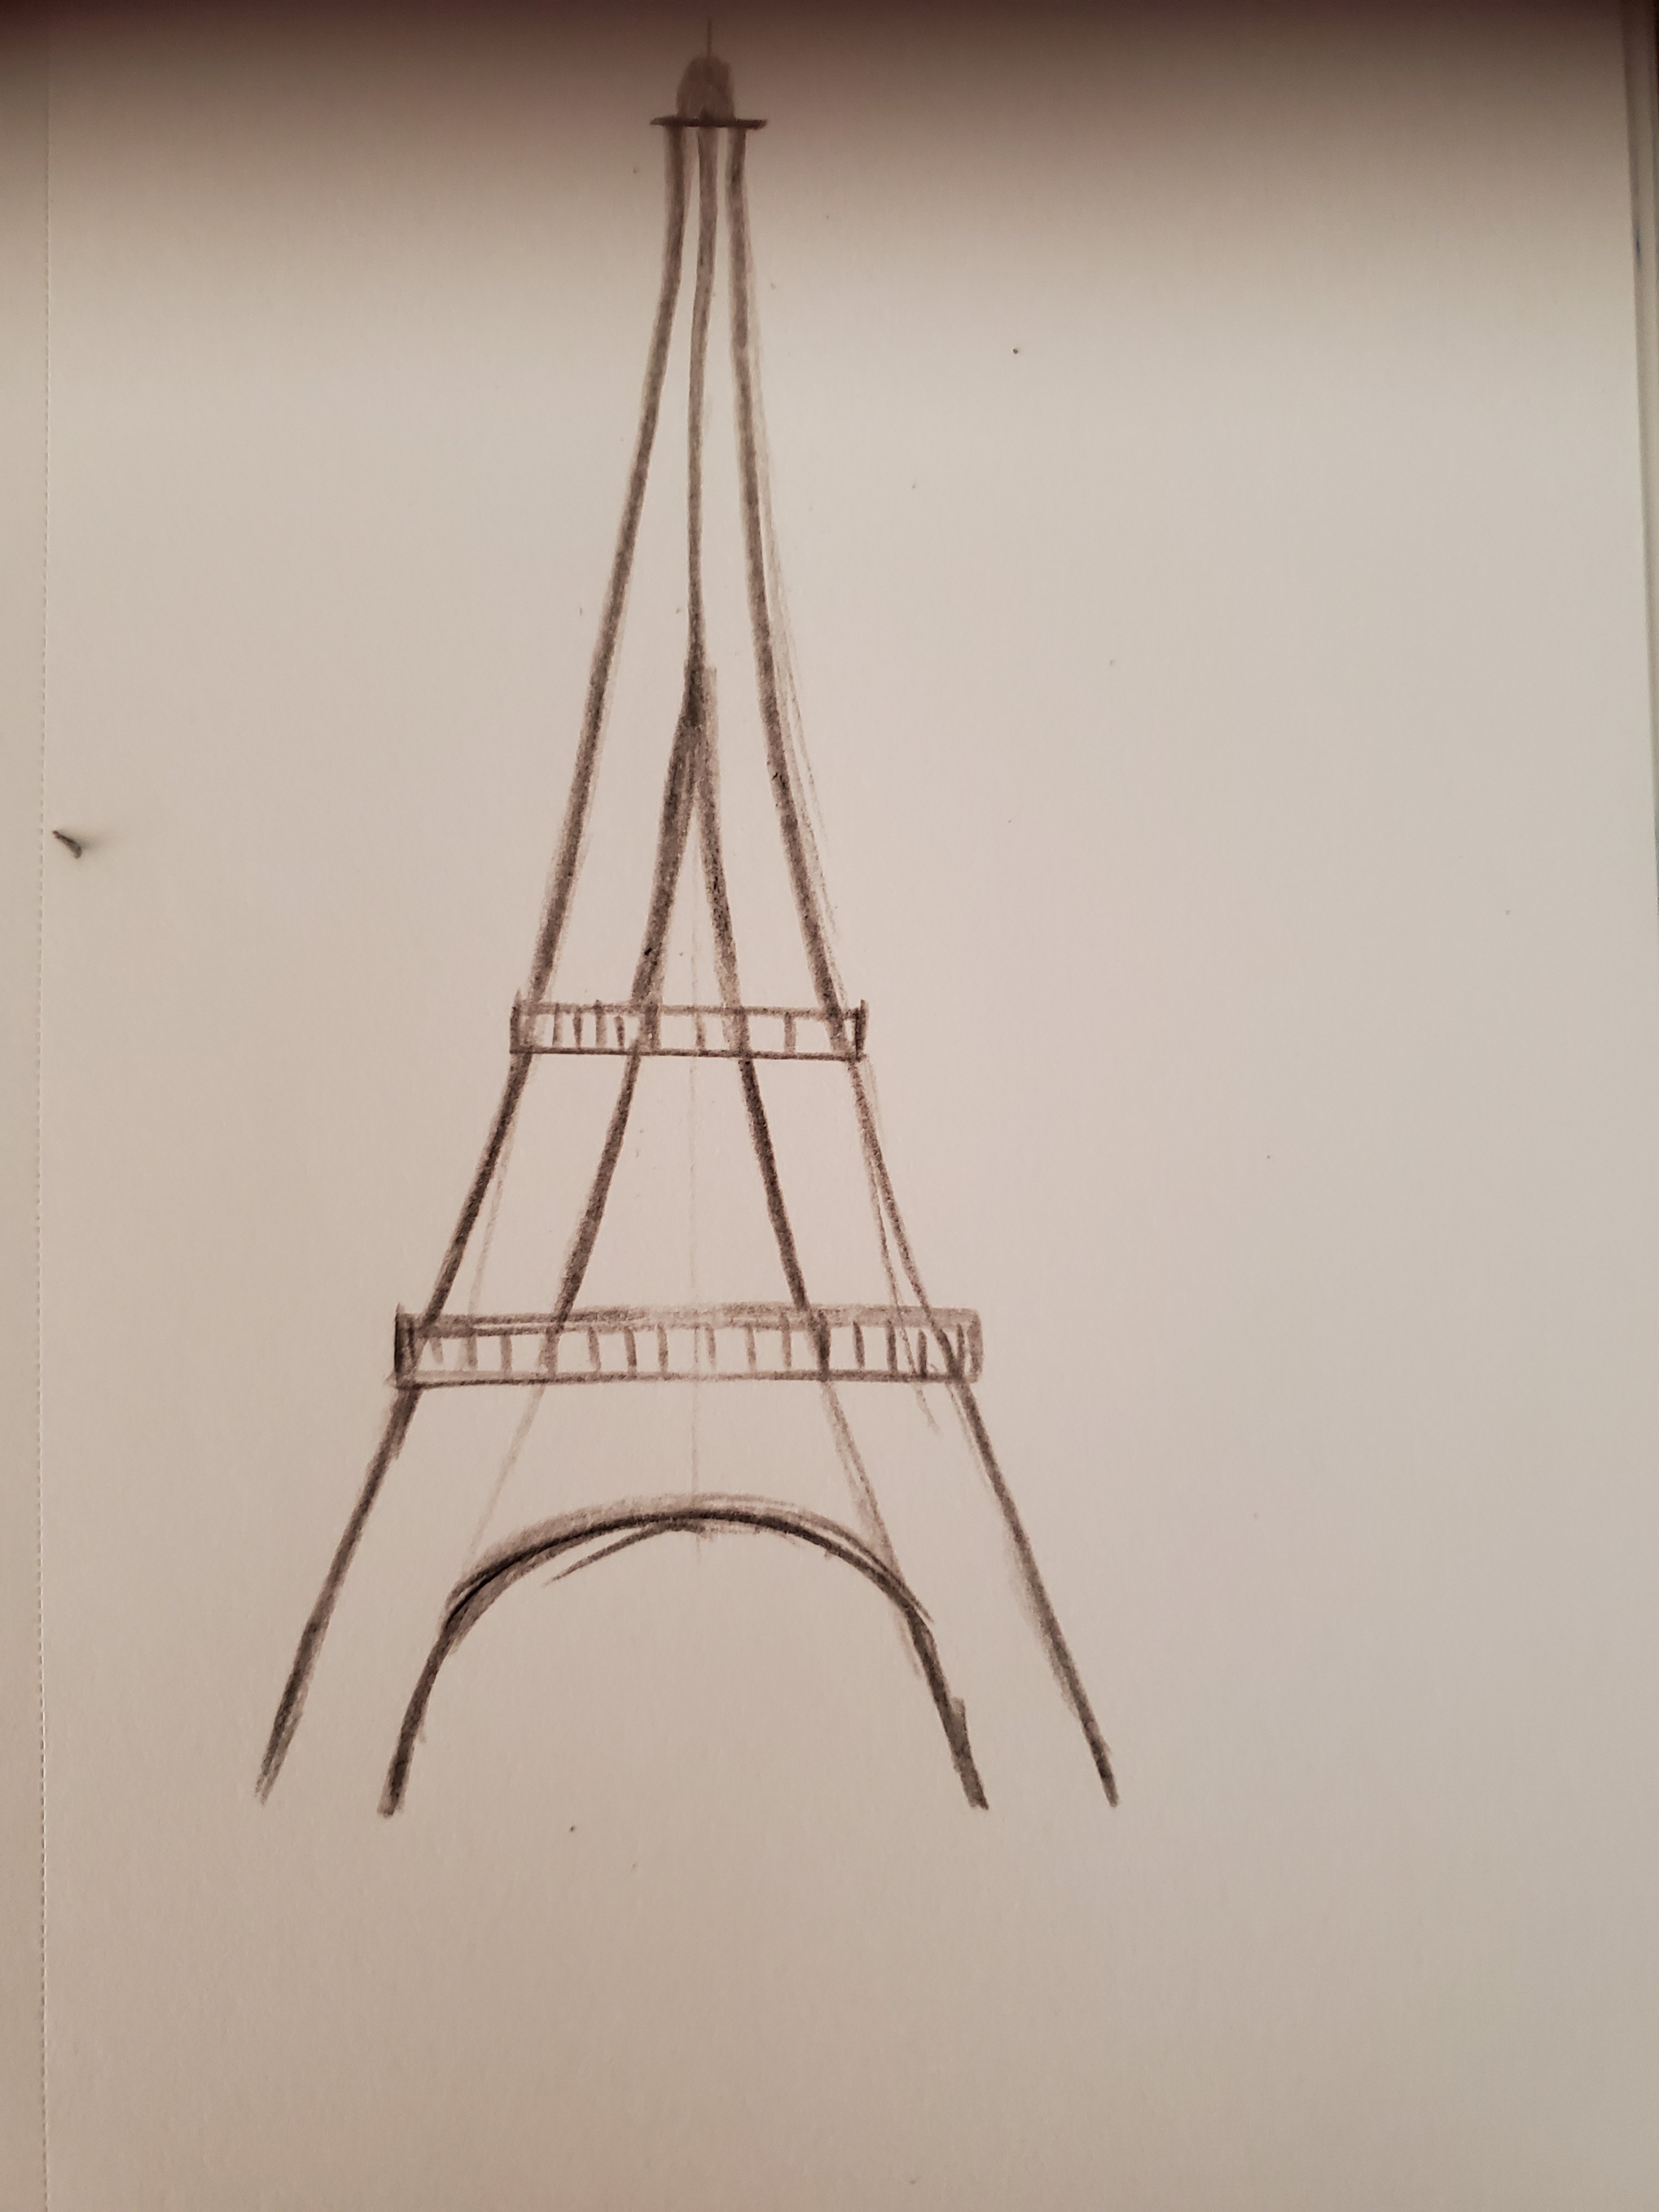 Paris Doodle Art: Eiffel Tower Drawing